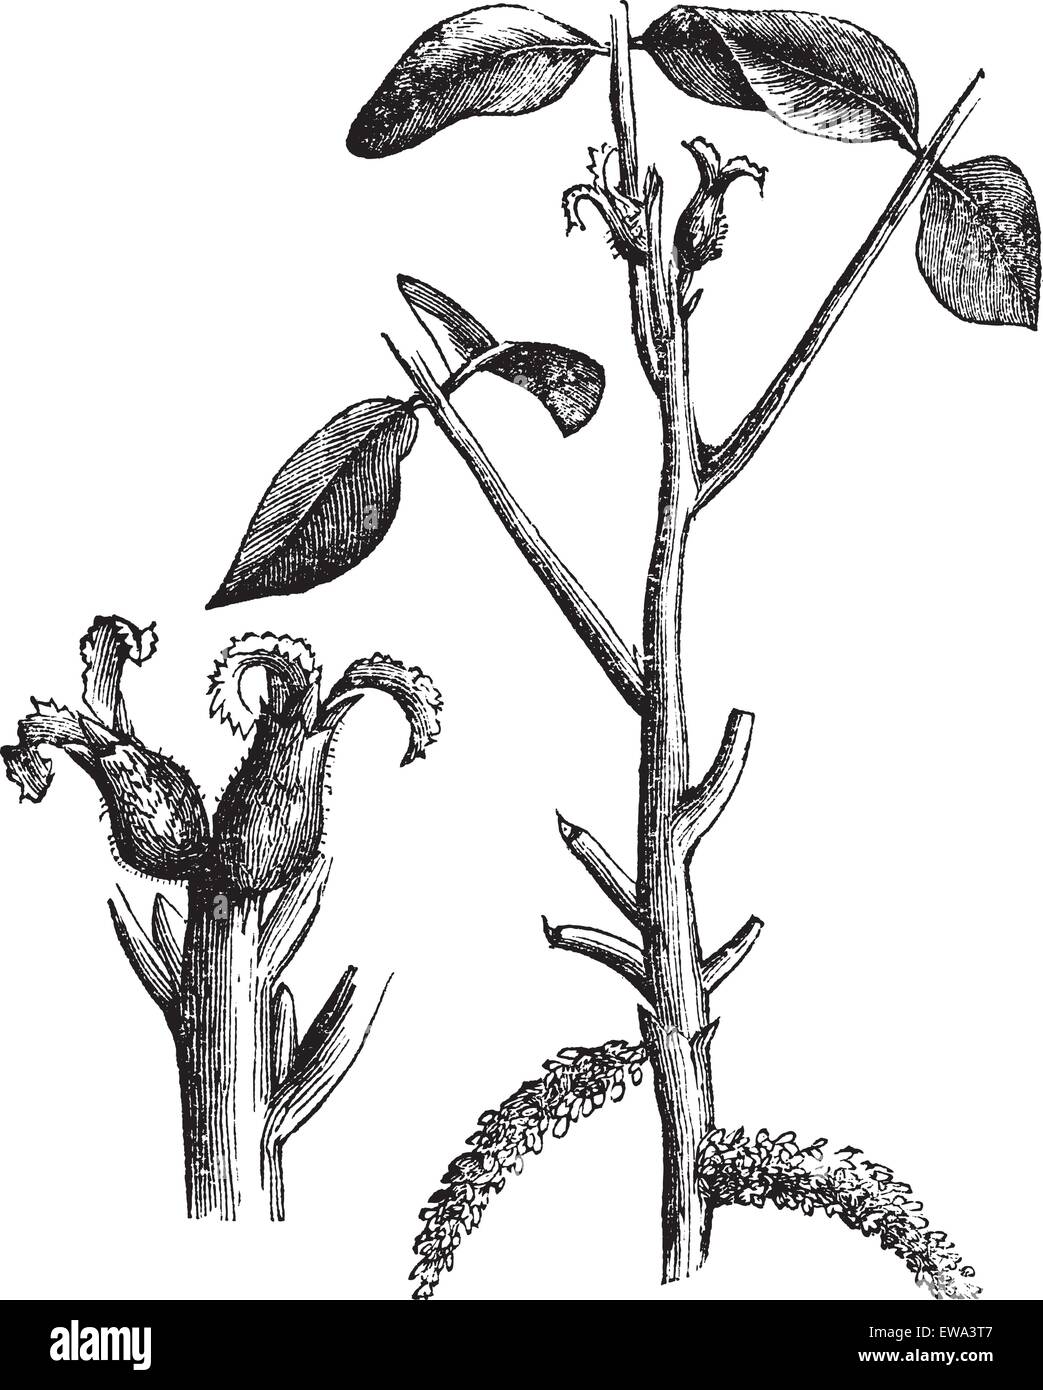 Nussbaum oder Juglans SP. zeigt Blumen (links), graviert Vintage Illustration. Trousset Enzyklopädie (1886-1891). Stock Vektor